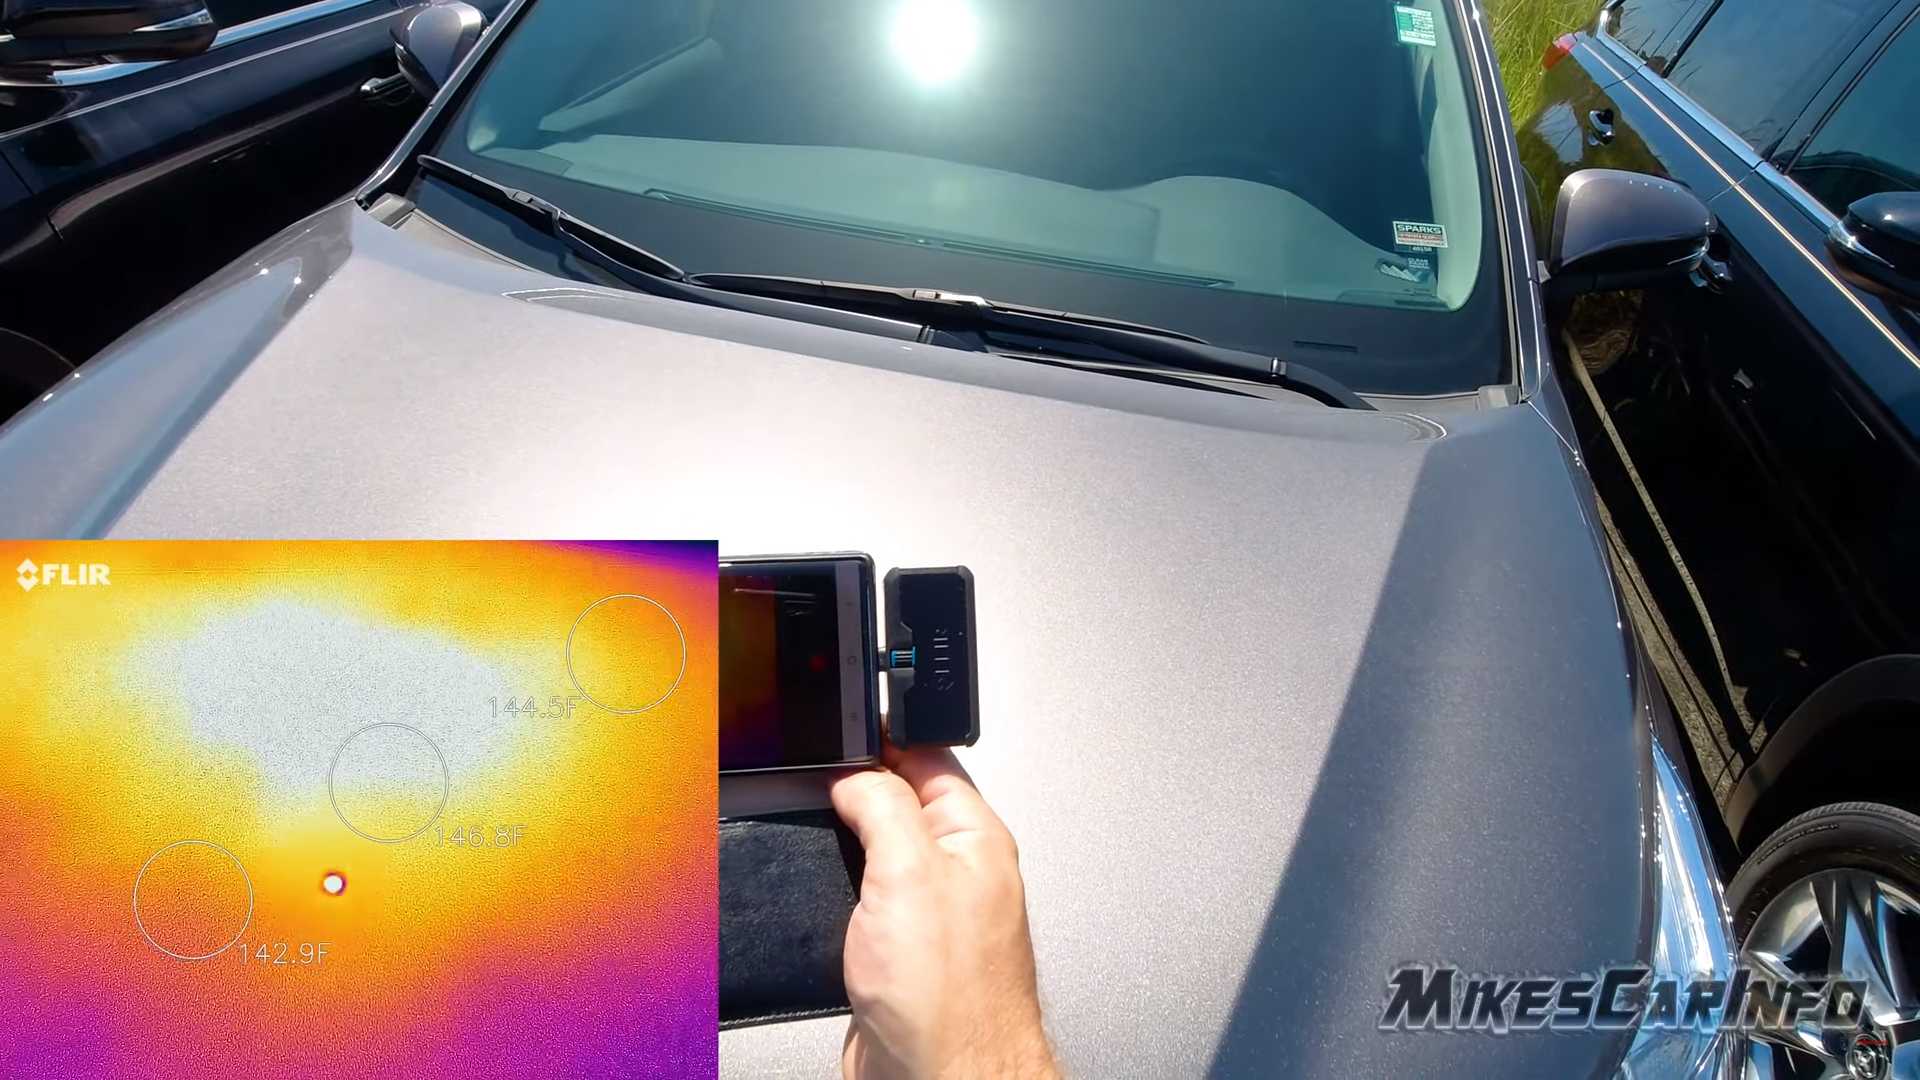 "بالفيديو" لأي مدى تختلف درجة حرارة السيارة اعتماداً على لونها؟ 10